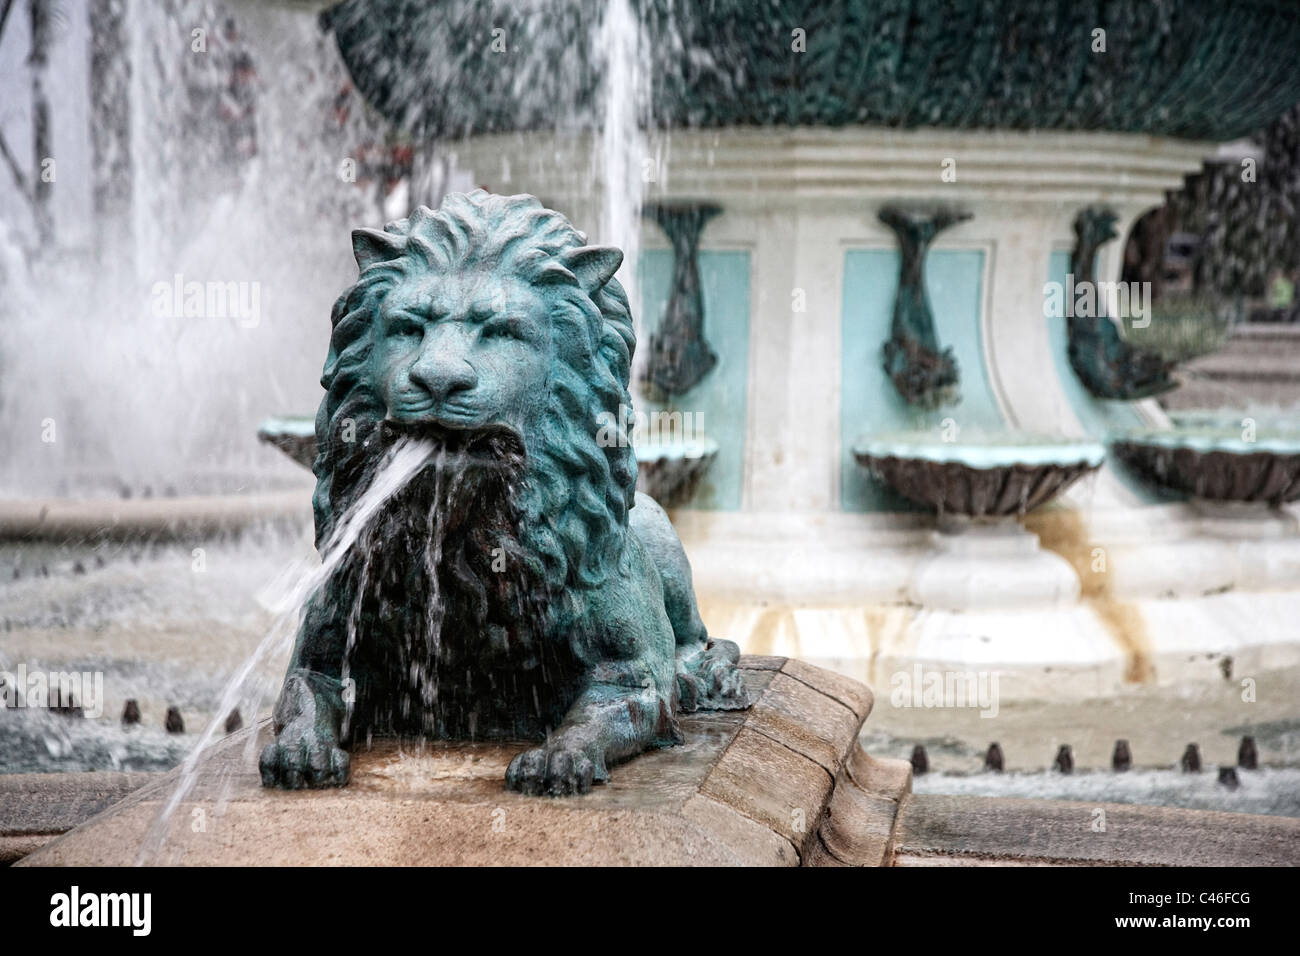 Stati Uniti d'America, Caraibi, Puerto Rico, South Coast, Ponce, Plaza Las Delicias, la fontana dei leoni (Fuente de Los Leones) Foto Stock